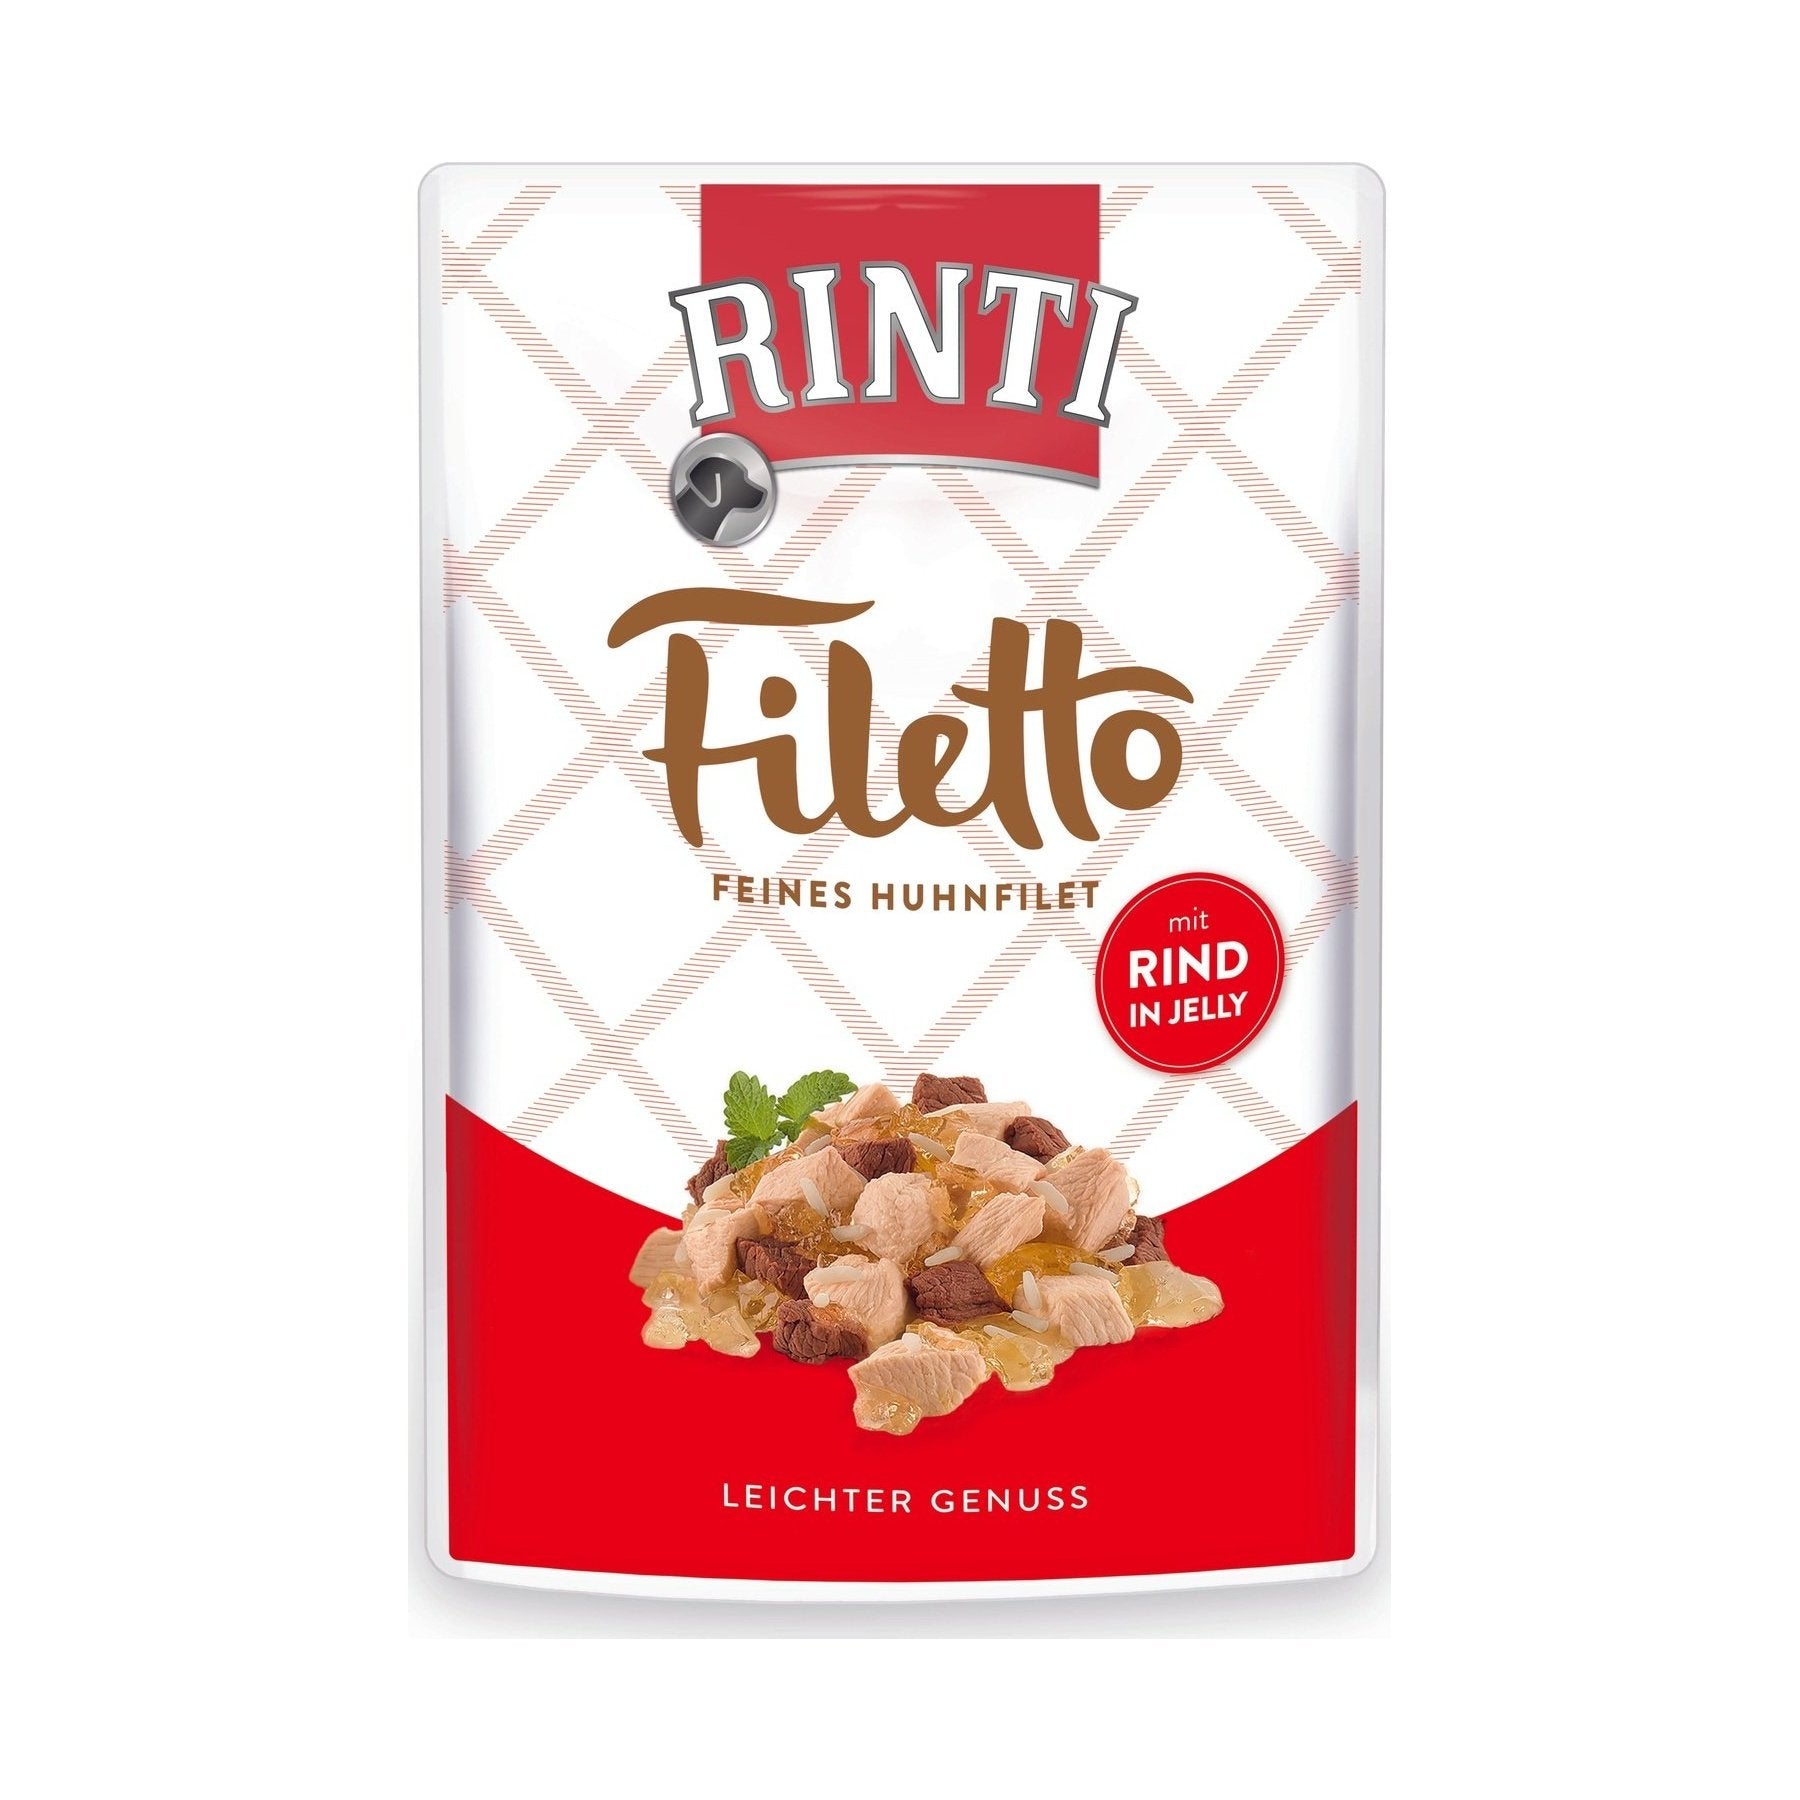 Rinti Filetto Jelly Huhn & Rind - zoo.de